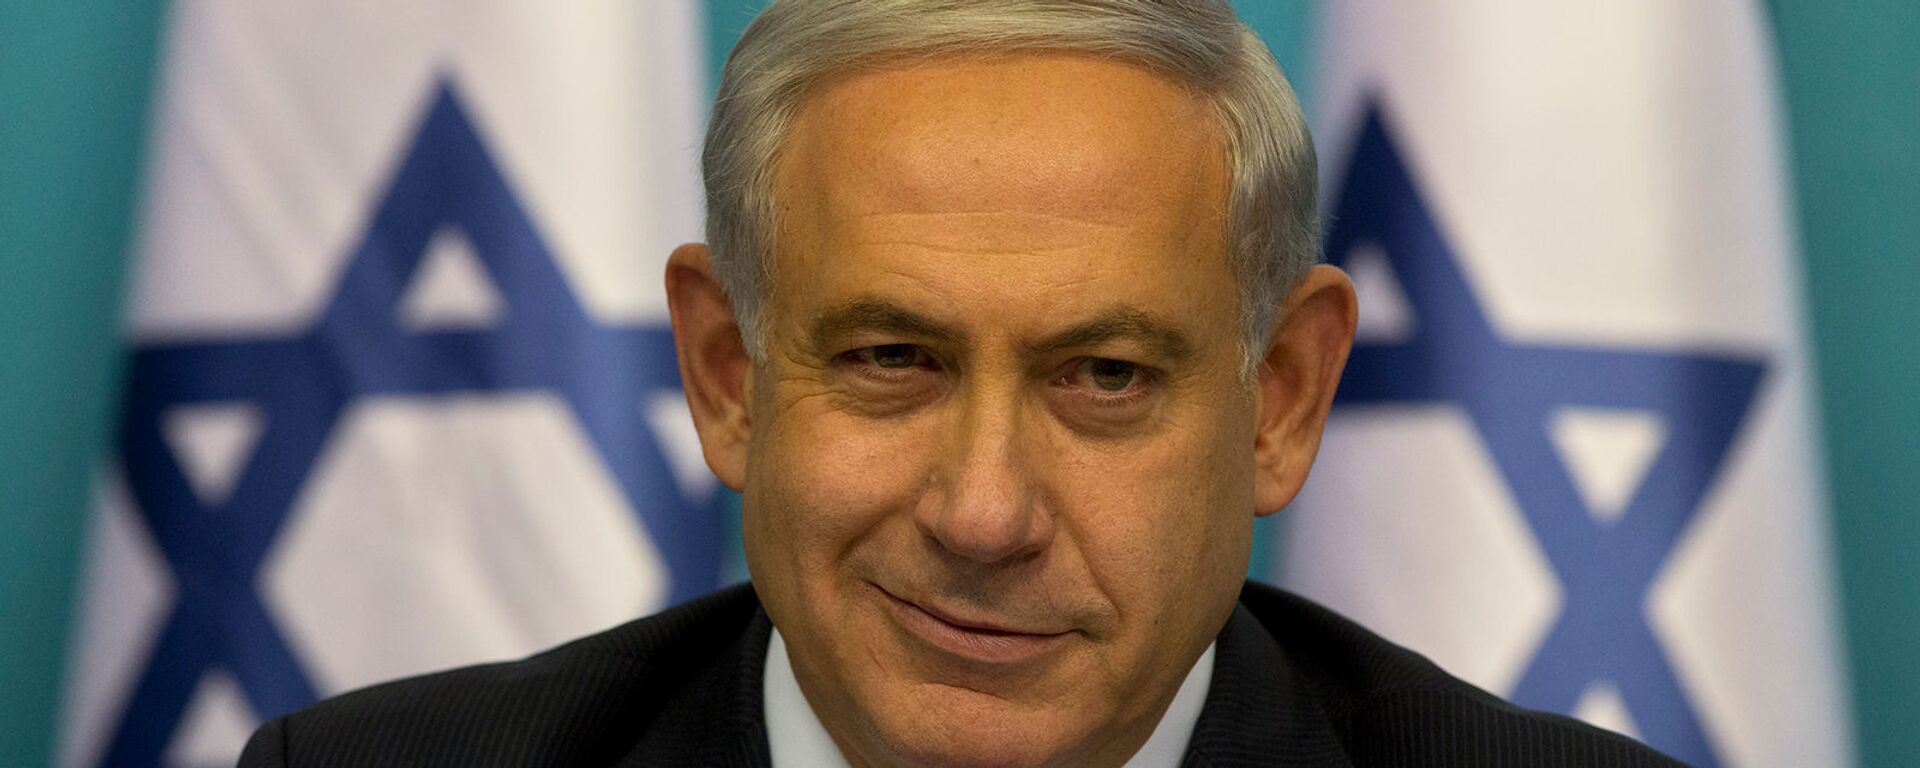 Премьер-министр Израиля Биньямин Нетаньяху во время пресс-конференции (27 августа 2014). Иерусалим - Sputnik Армения, 1920, 21.05.2021